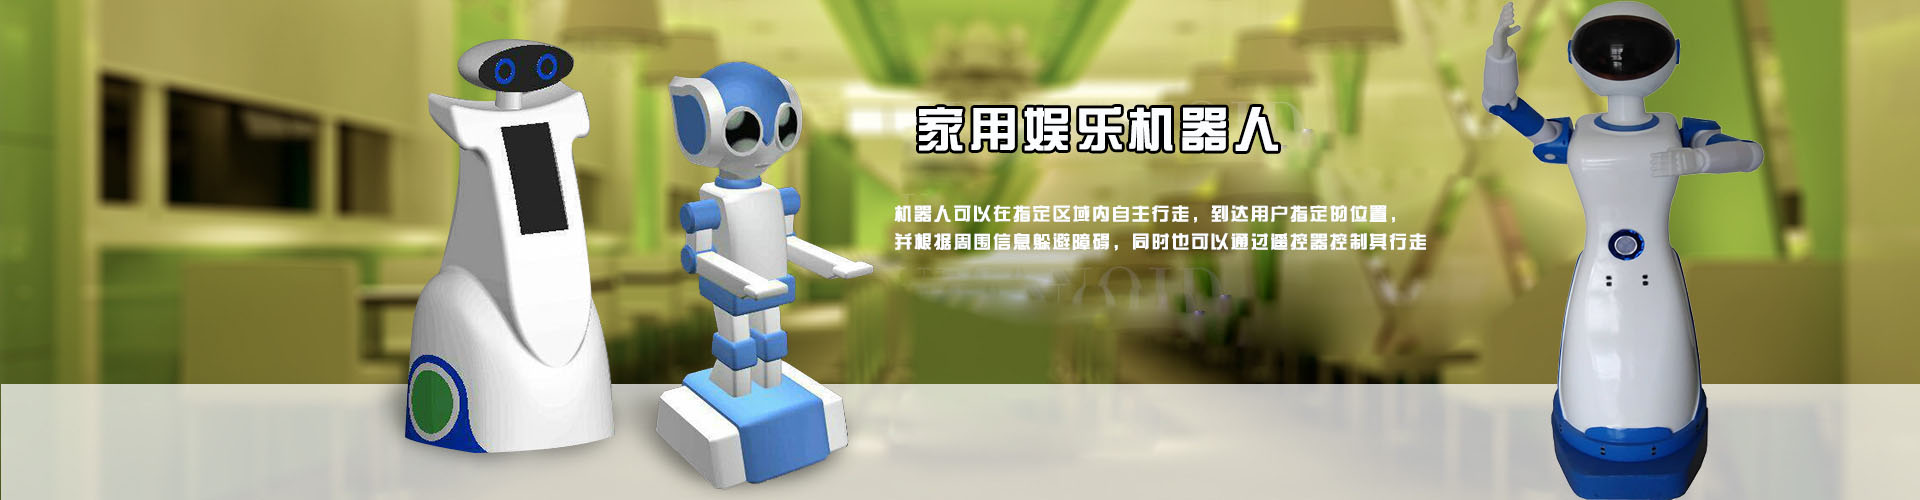 云南昆明机器人餐厅教您如何让自己的餐厅立于不败之地